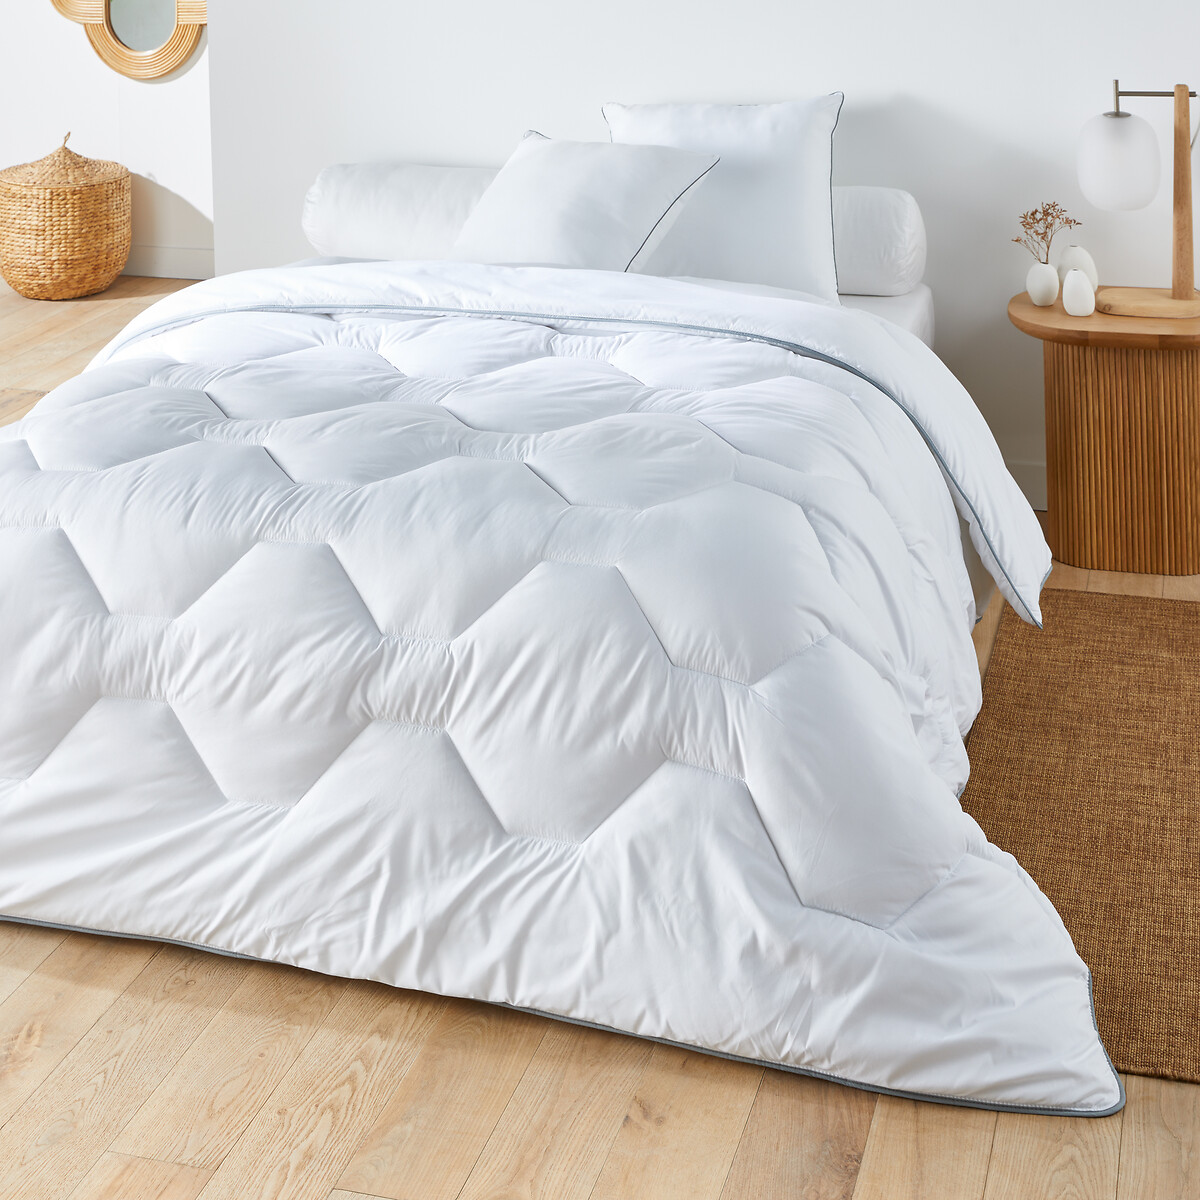 Одеяло из синтетического материала для прохладных помещений Confort htel  240 x 220 см белый LaRedoute, размер 240 x 220 см - фото 1